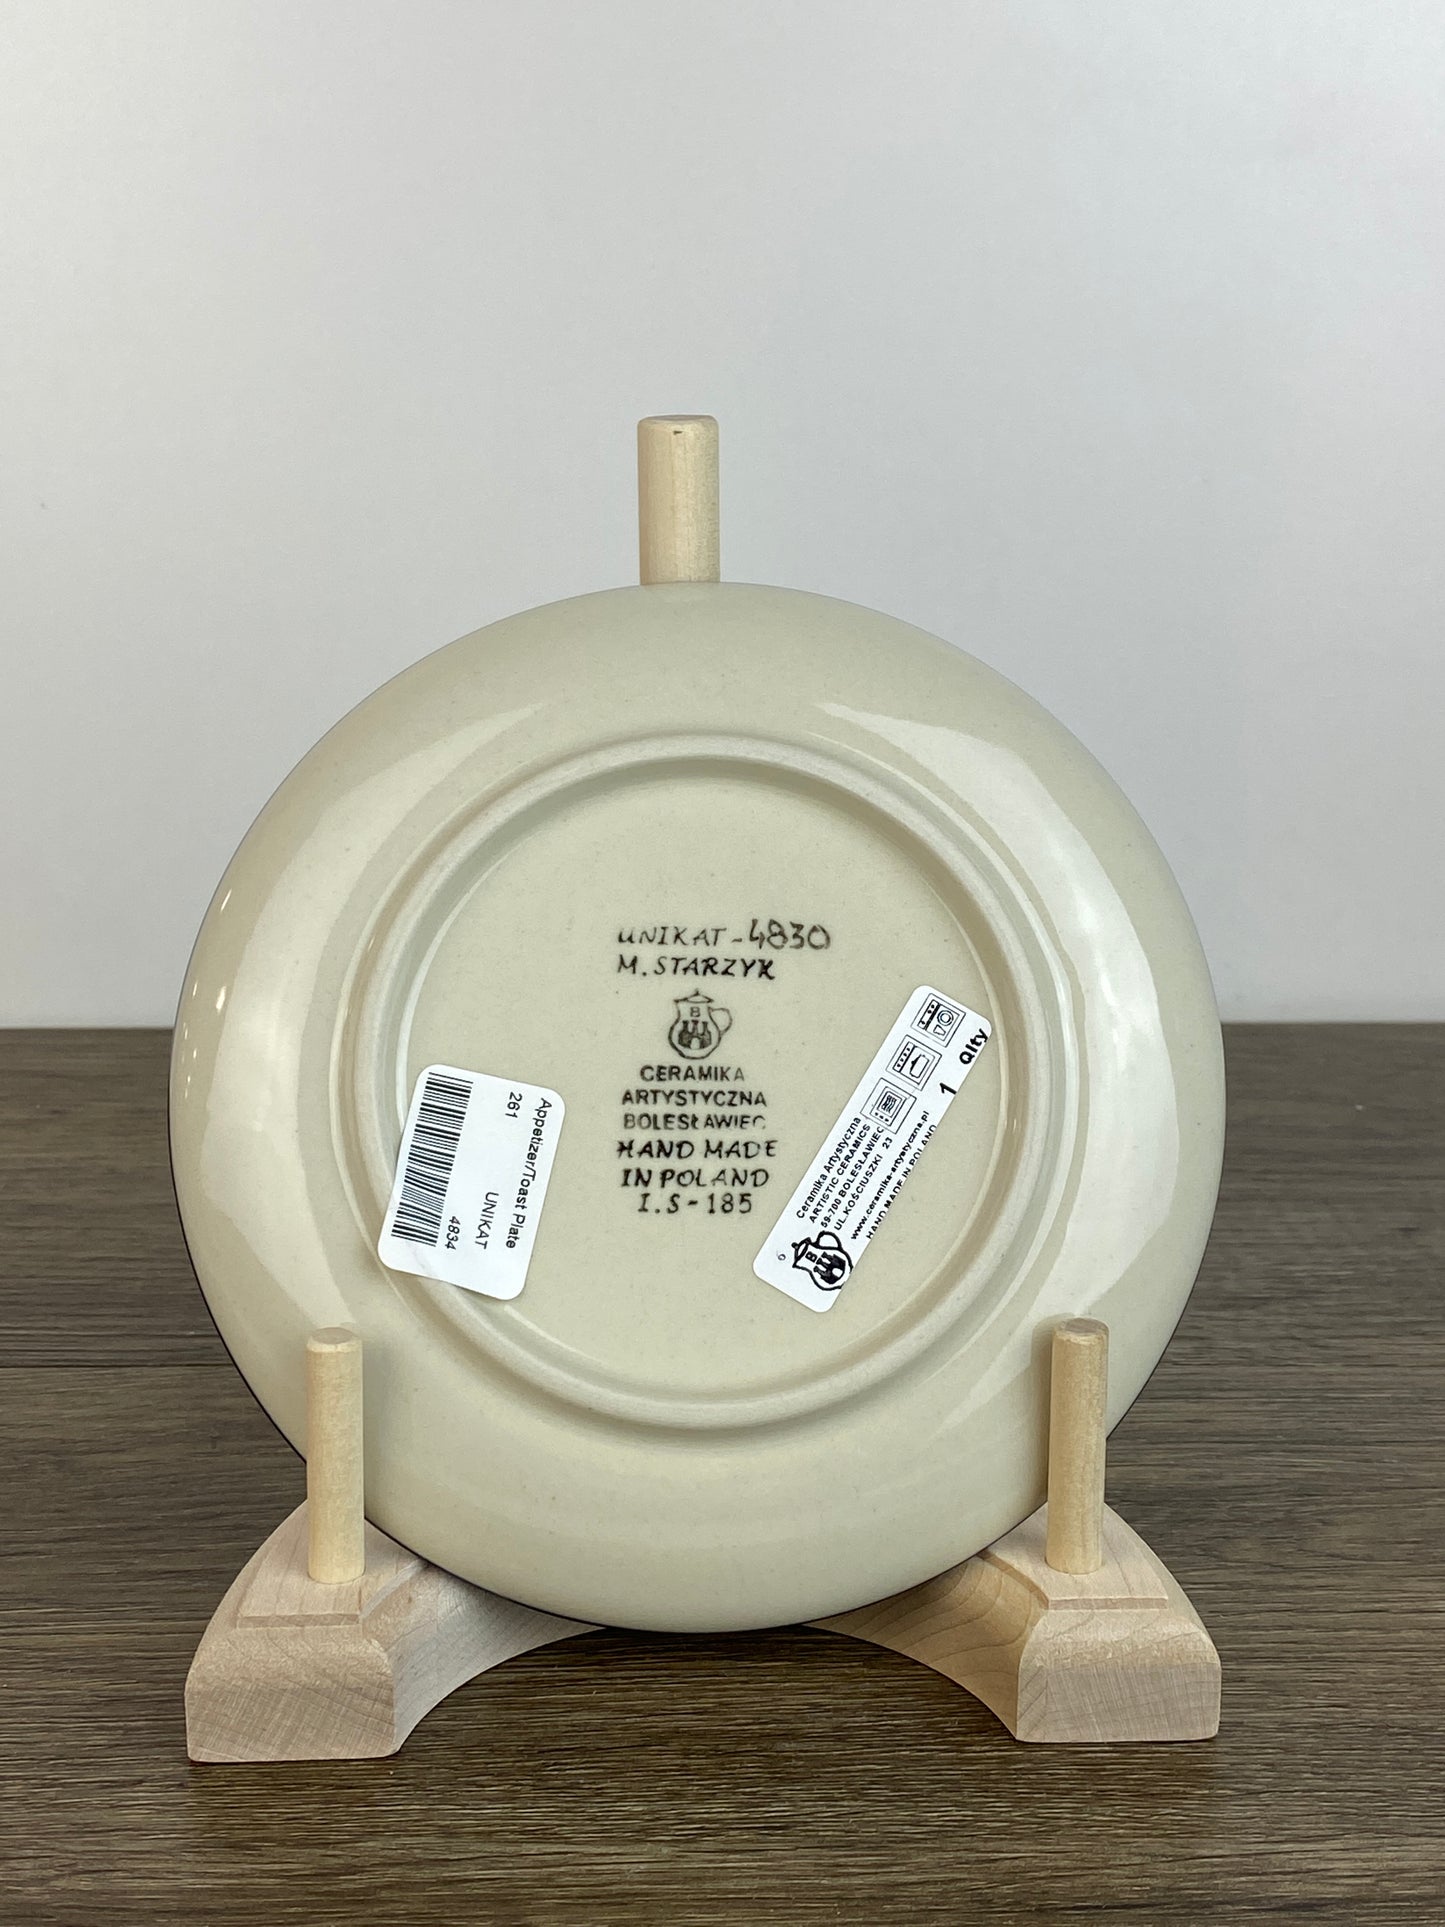 6" Unikat Toast Plate - Shape 261 - Pattern U4830